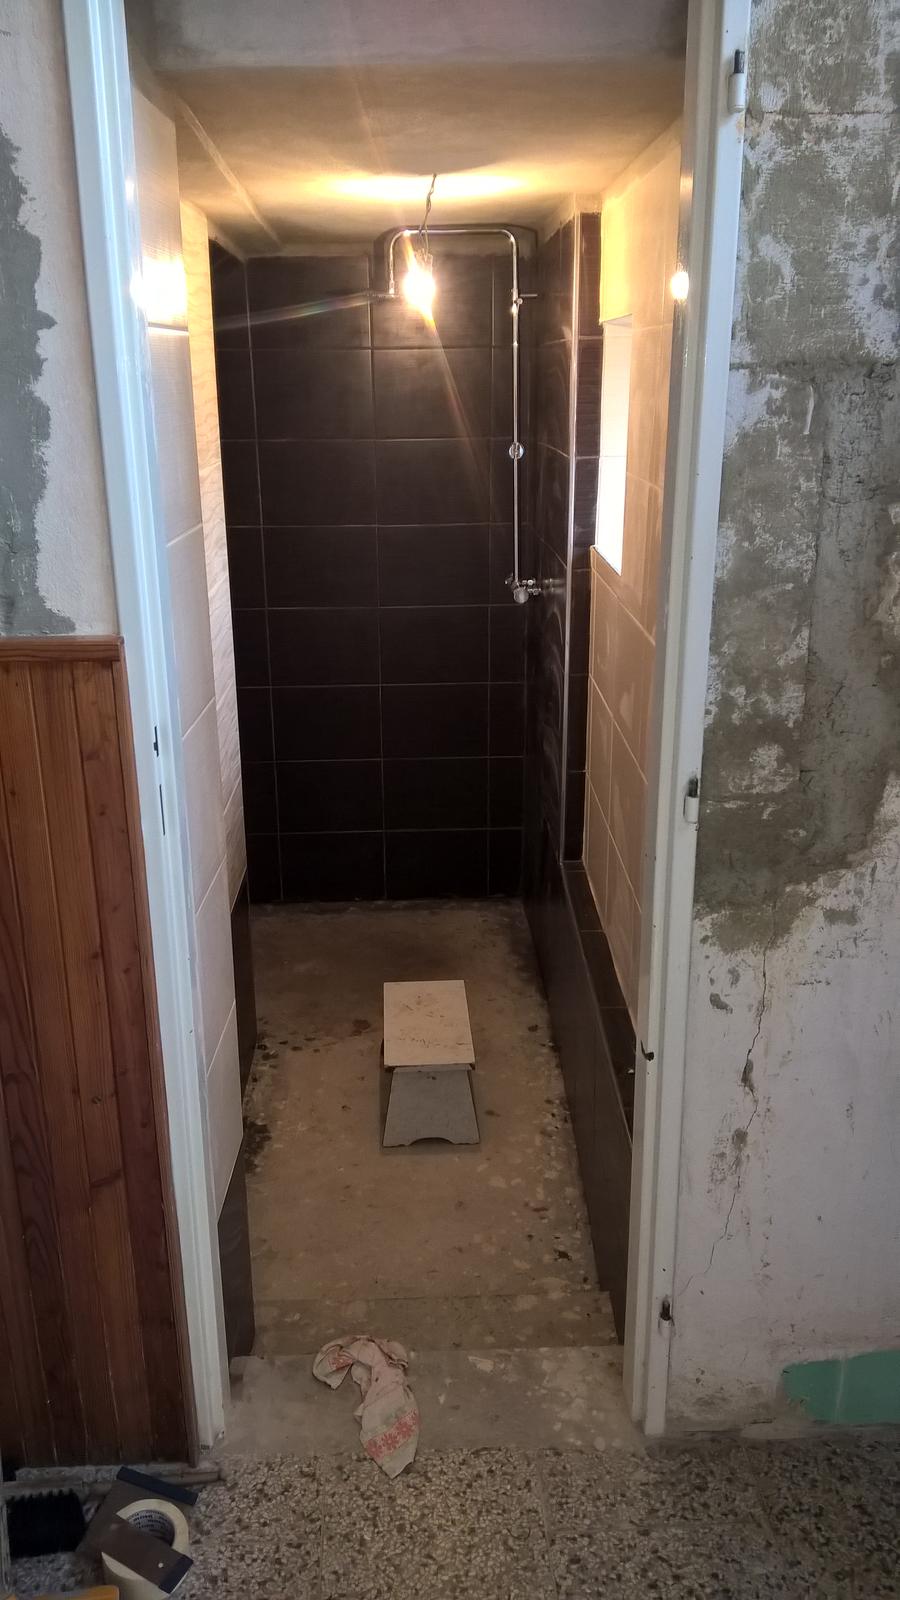 Koupelna místo sklepa - hotový obklad